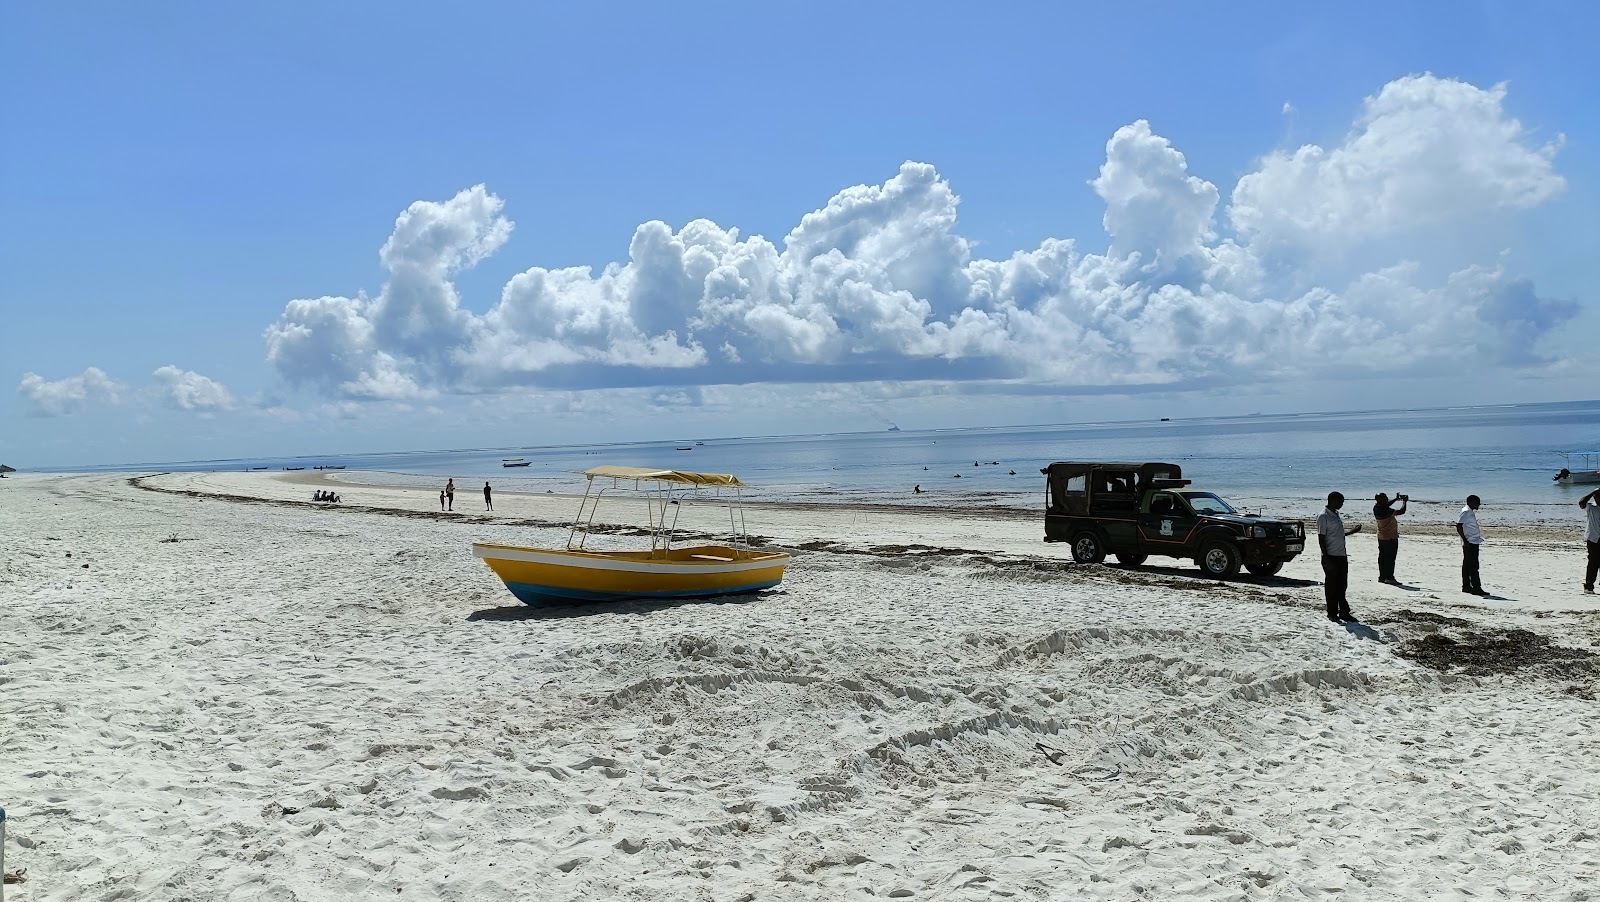 Fotografie cu Plaja Nyali (Mombasa) - locul popular printre cunoscătorii de relaxare